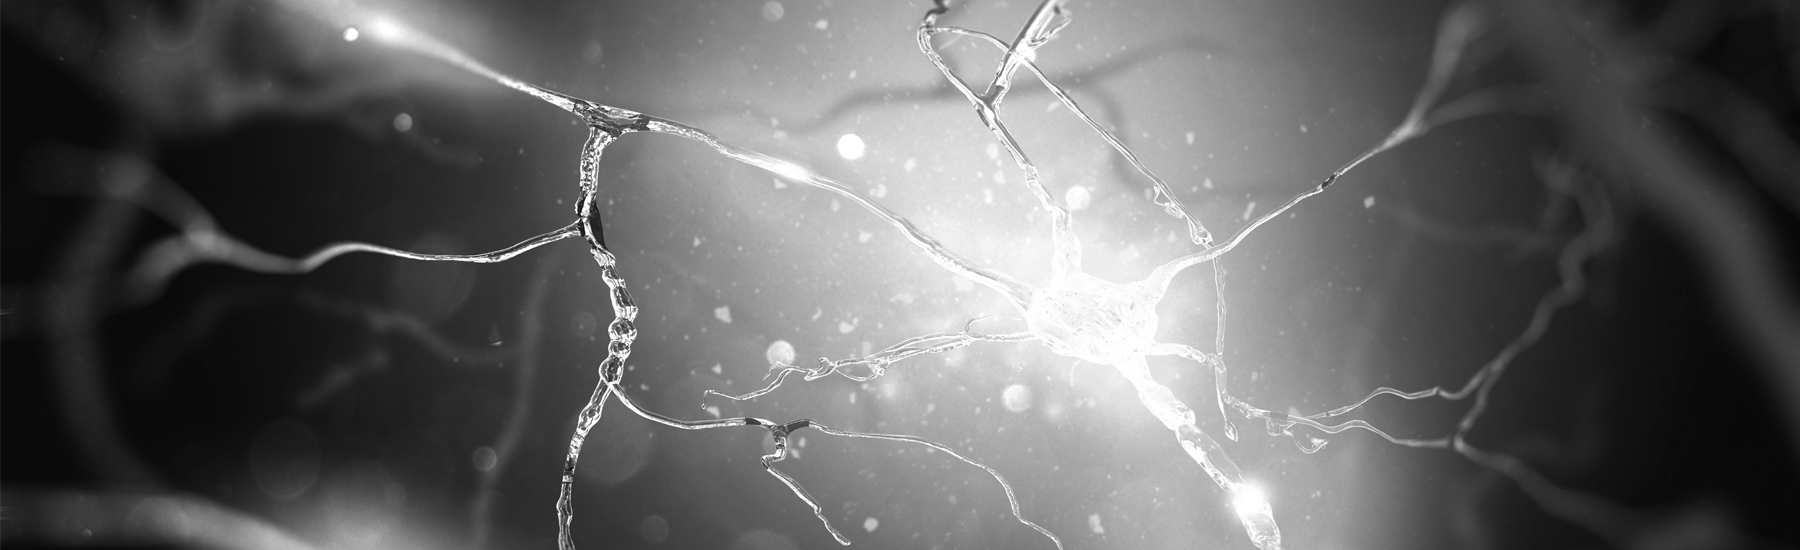 Bild Bobath meets Manuelle - Biomechanische und neuromuskuläre Aspekte der UNTEREN EXTREMITÄT, in der Behandlung neurologischer Patienten - SÜDTIROL